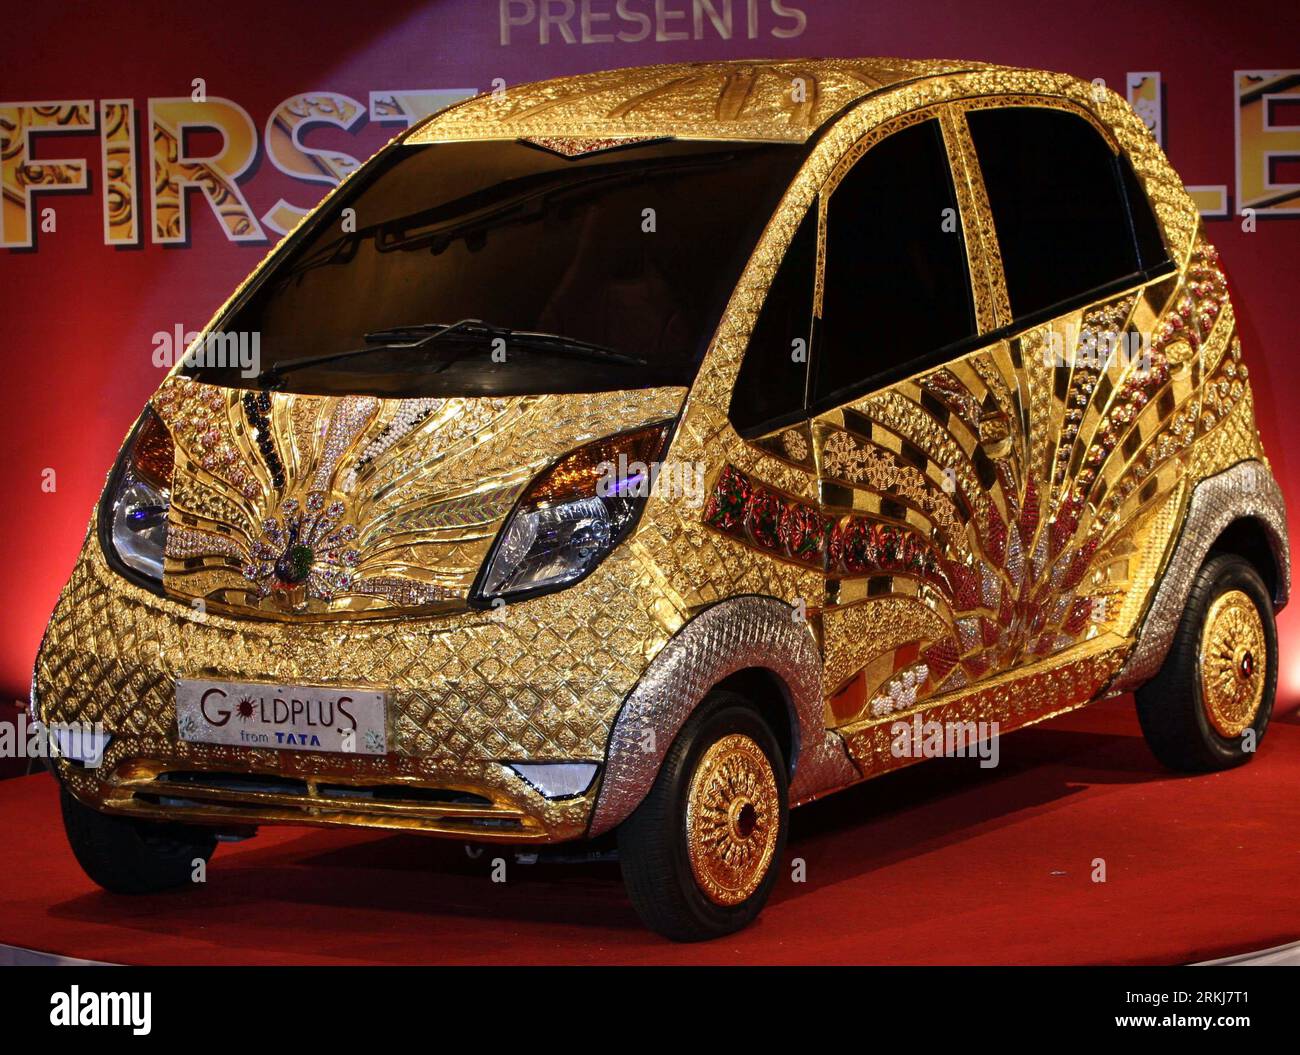 Bildnummer: 56031058 Datum: 19.09.2011 Copyright: imago/Xinhua (110919) -- MUMBAI, 19. September 2011 (Xinhua) -- das erste Gold-Schmuckauto der Welt, das von Tata beansprucht wurde, wird während einer Enthüllungszeremonie in Mumbai, Indien, am 19. September 2011 gesehen. Etwa 80 kg 22-karätiges Gold, etwa 15 kg Silber und 10.000 Edelsteine wurden zur Dekoration des Tata Nano-Wagens verwendet. (Xinhua/Stringer) INDIA-MUMBAI-TATA-GOLD SCHMUCKWAGEN PUBLICATIONxNOTxINxCHN Wirtschaft kurios Aufmacher Premiere x2x xsk 2011 quer o0 Silber, Edelsteine, Auto, Fahrzeug, Goldplus, Tata, Objekte, Luxus 56031058 Datum 19 09 2011 Copyright I Stockfoto